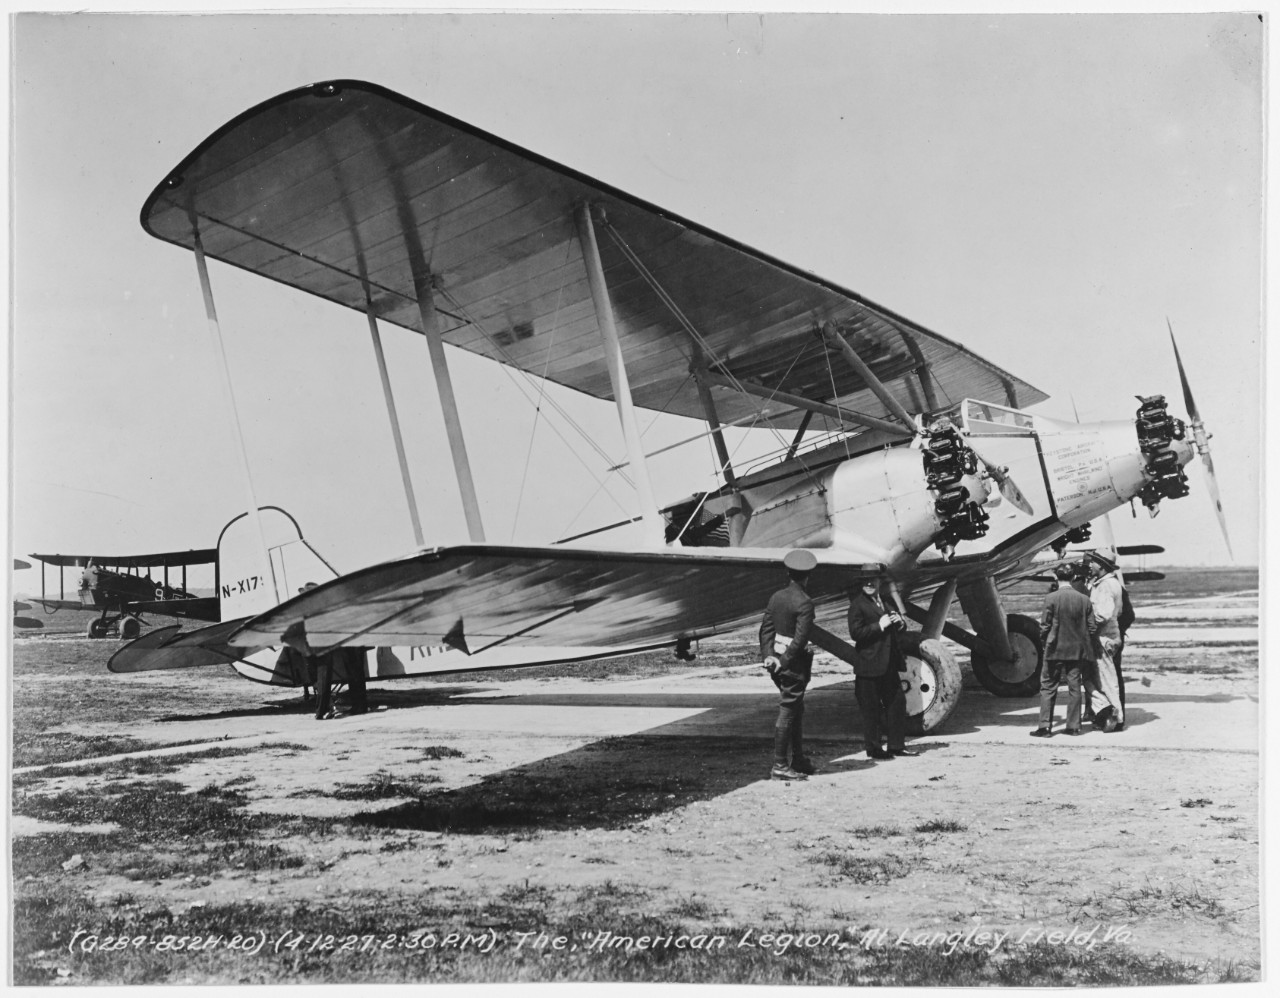 Keystone "Pathfinder" Airplane, "American Legion"